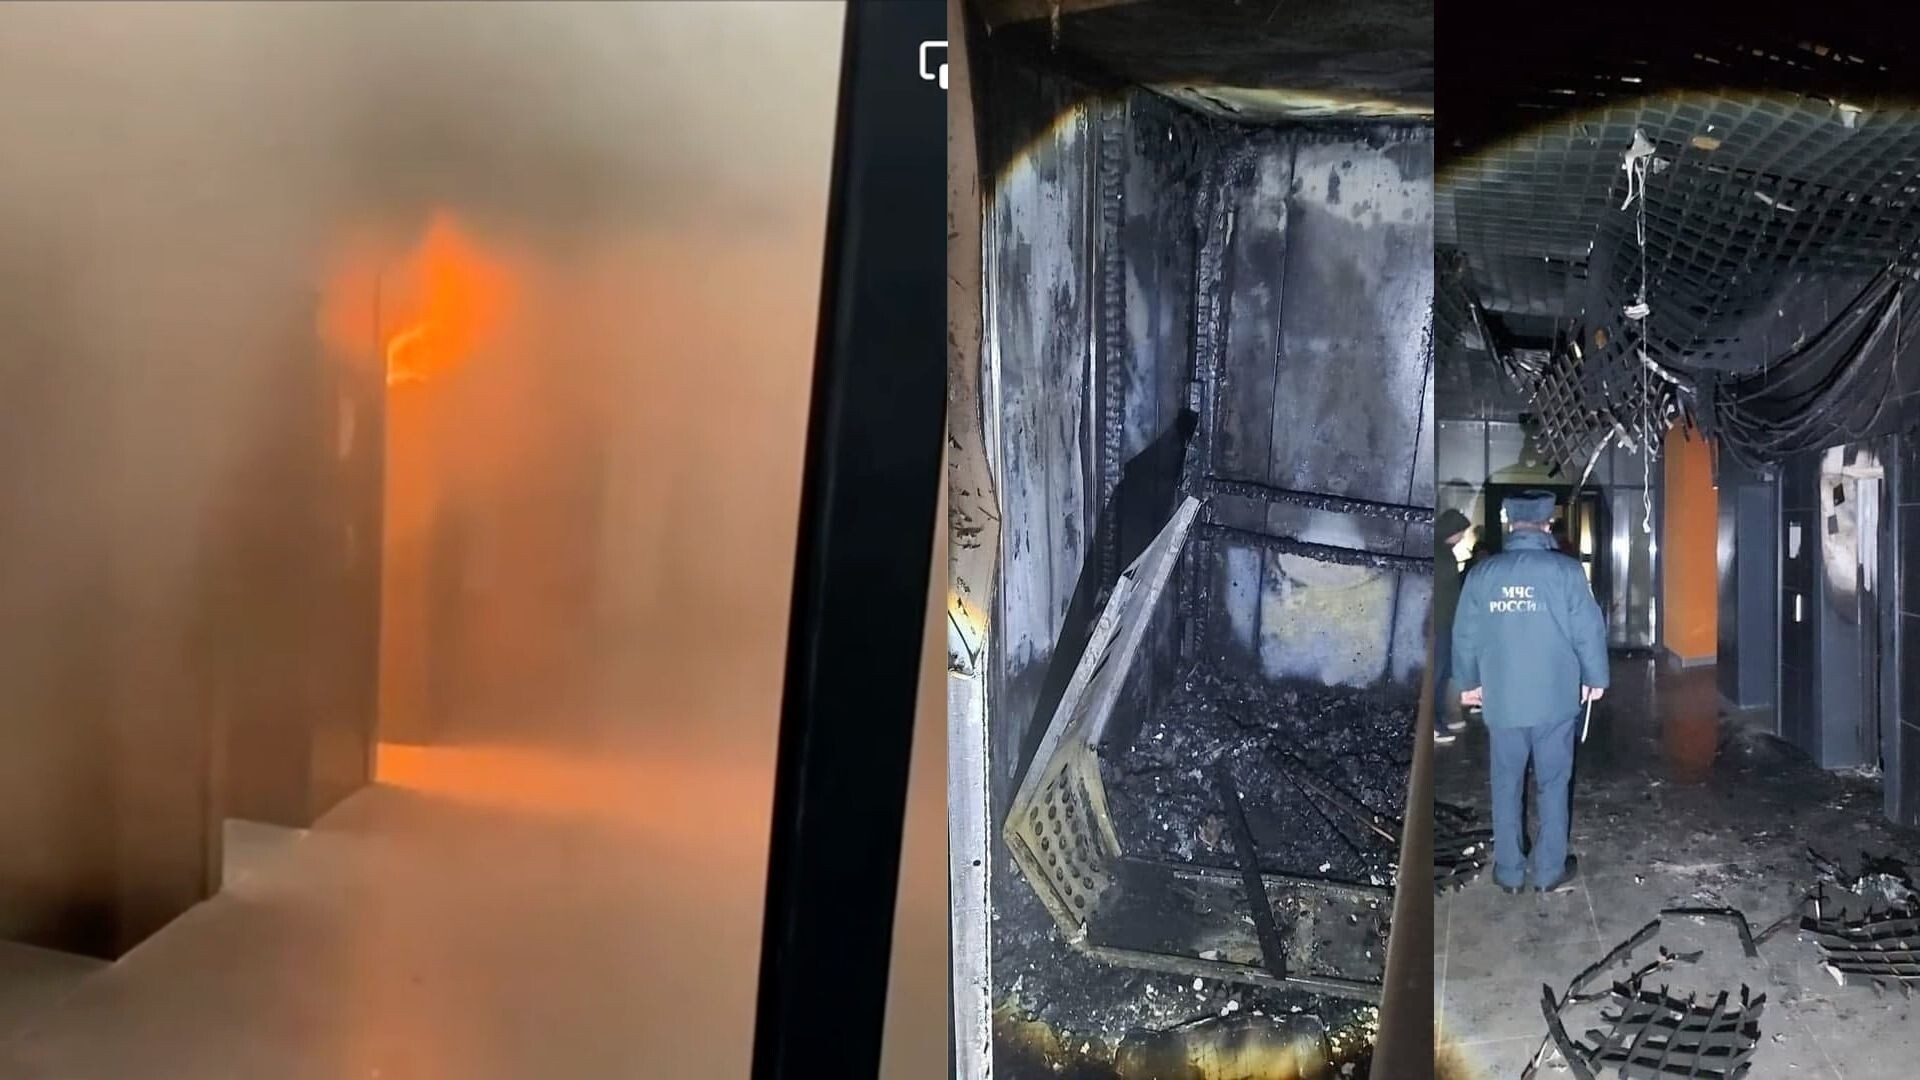 Пик пожар. Пожар в лифте. Пожар в лифтовой шахте. Пожар в новостройке.